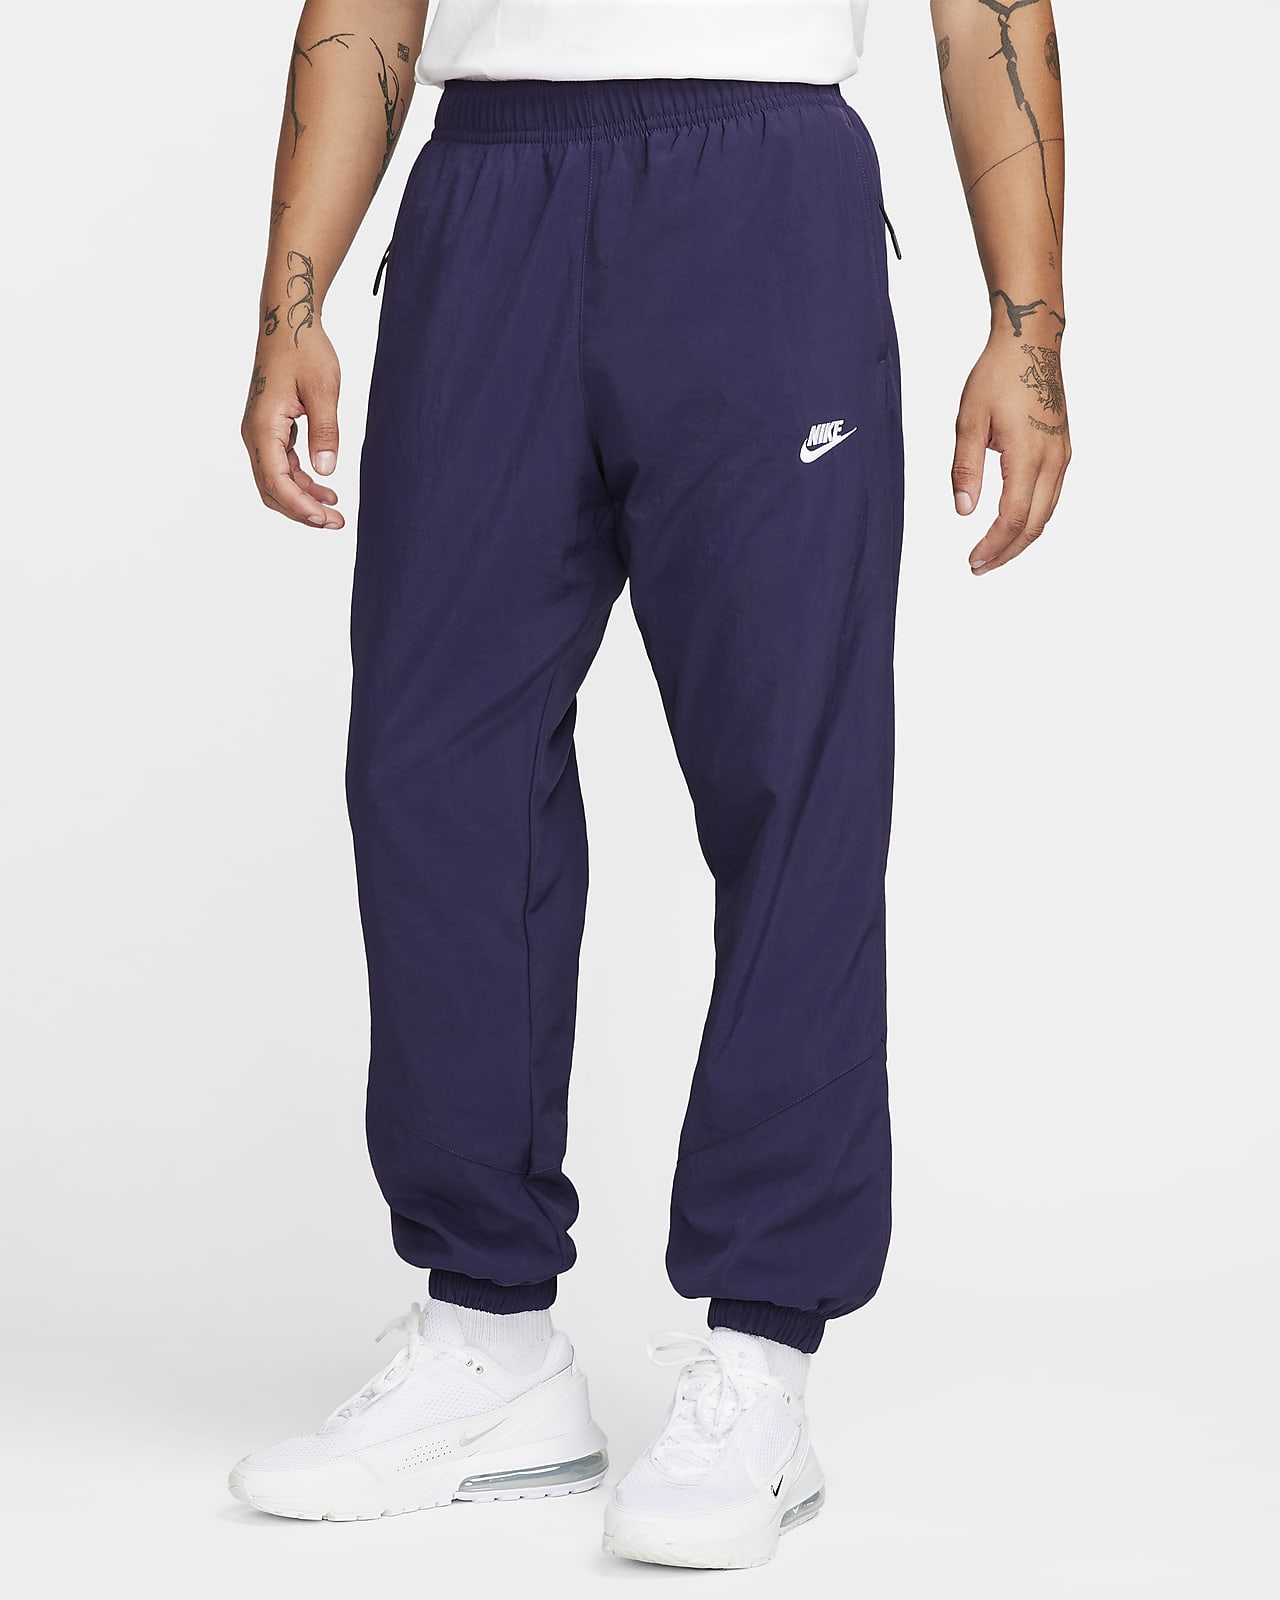 Pánské zimní tkané kalhoty Nike Windrunner